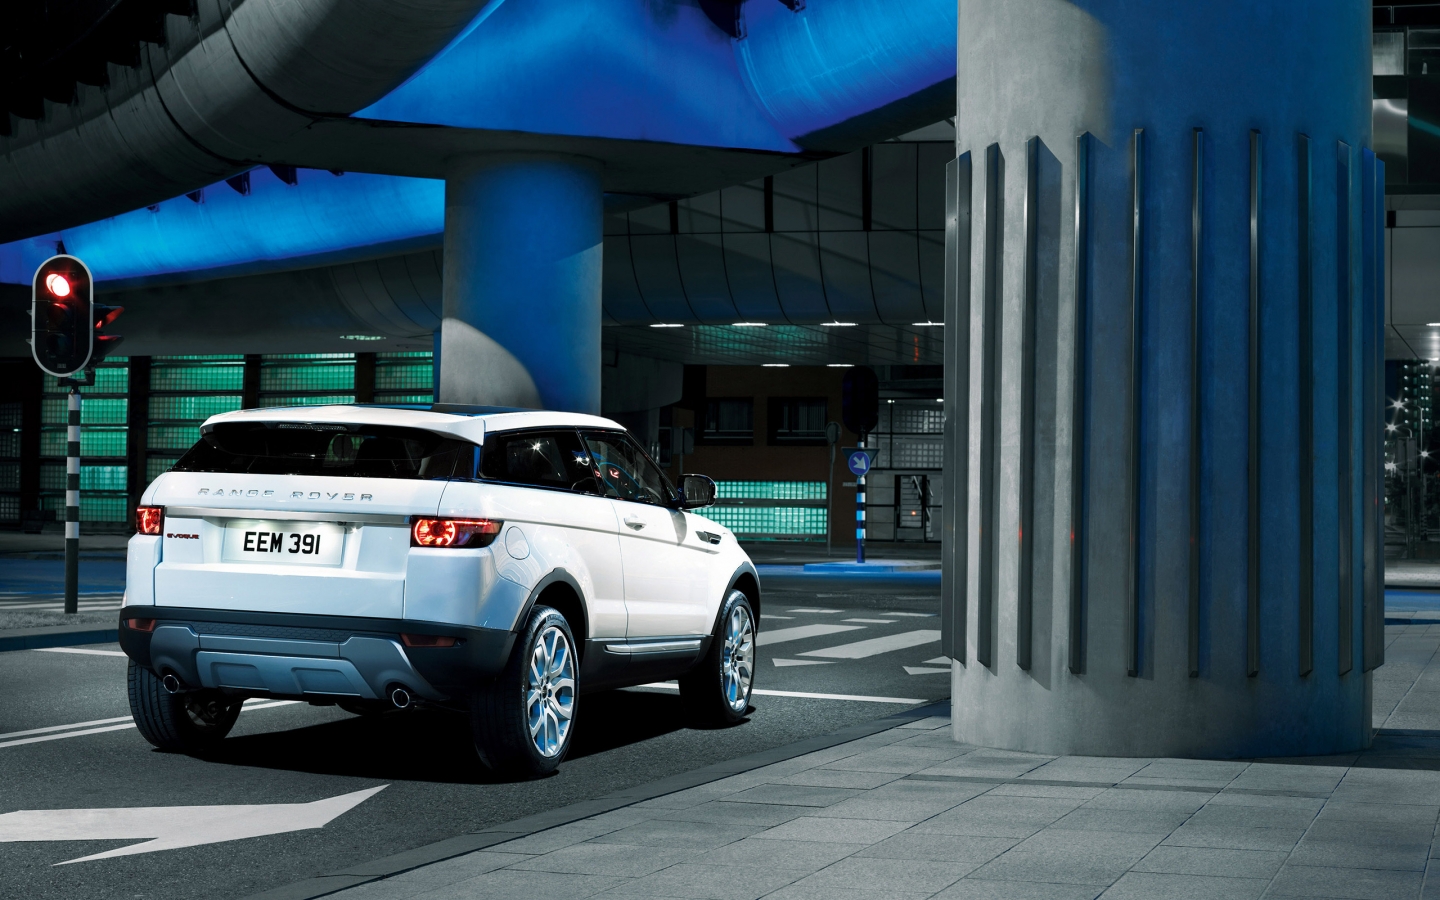 Range Rover Evoque Rear for 1440 x 900 widescreen resolution